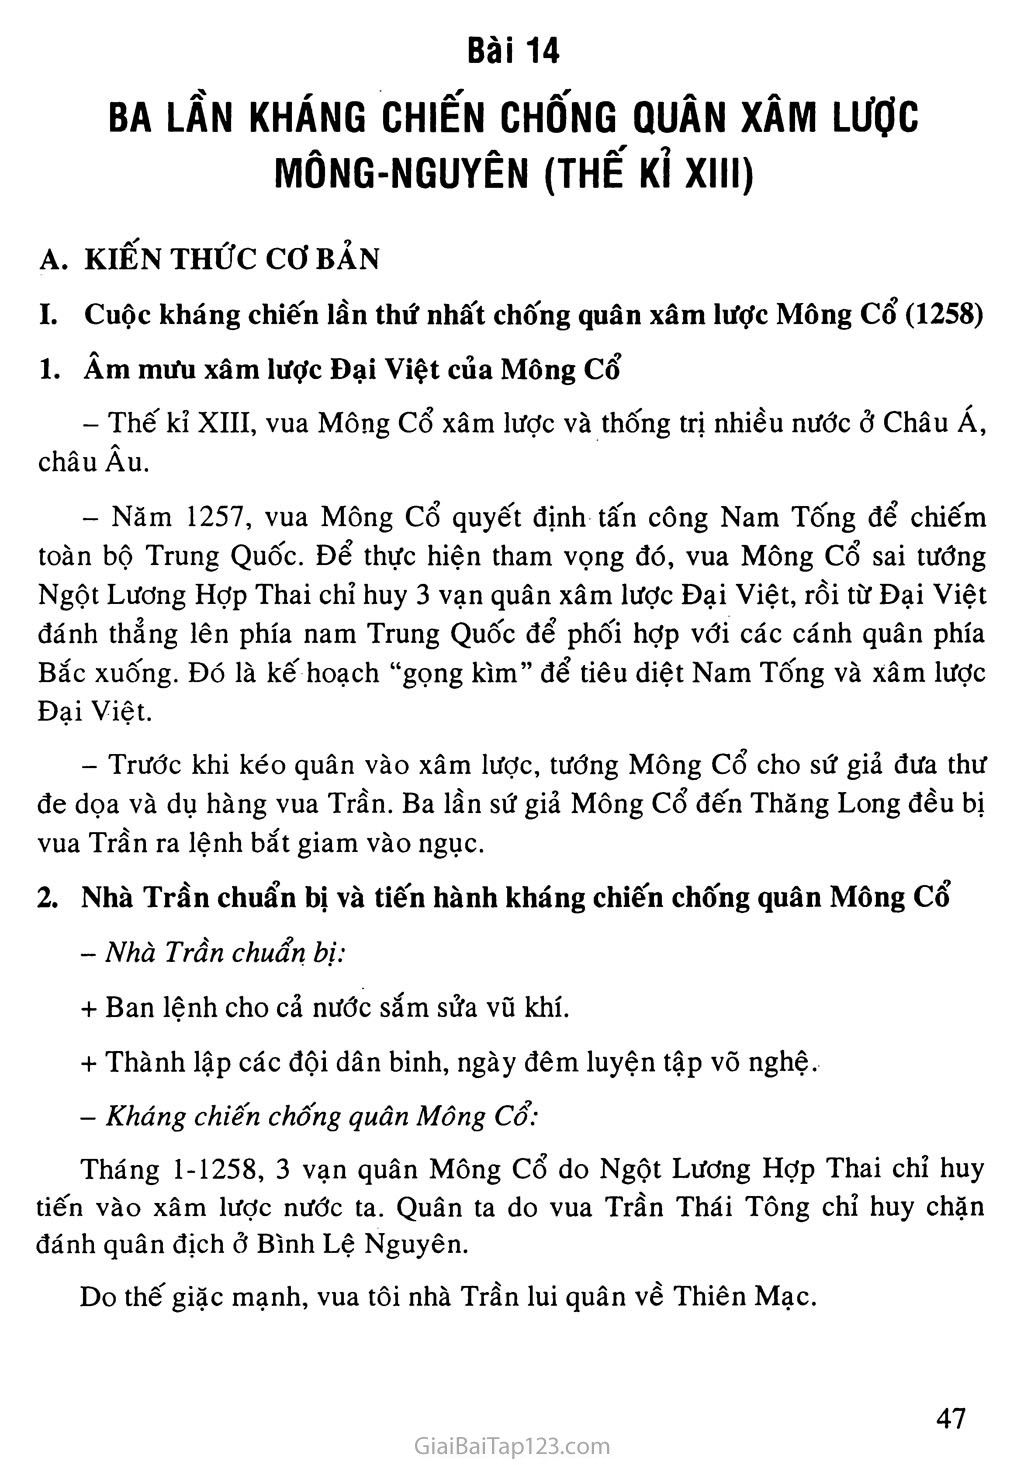 Bài 14: Ba lần kháng chiến chống quân xâm lược Mông - Nguyên (thế kỉ XIII) trang 1